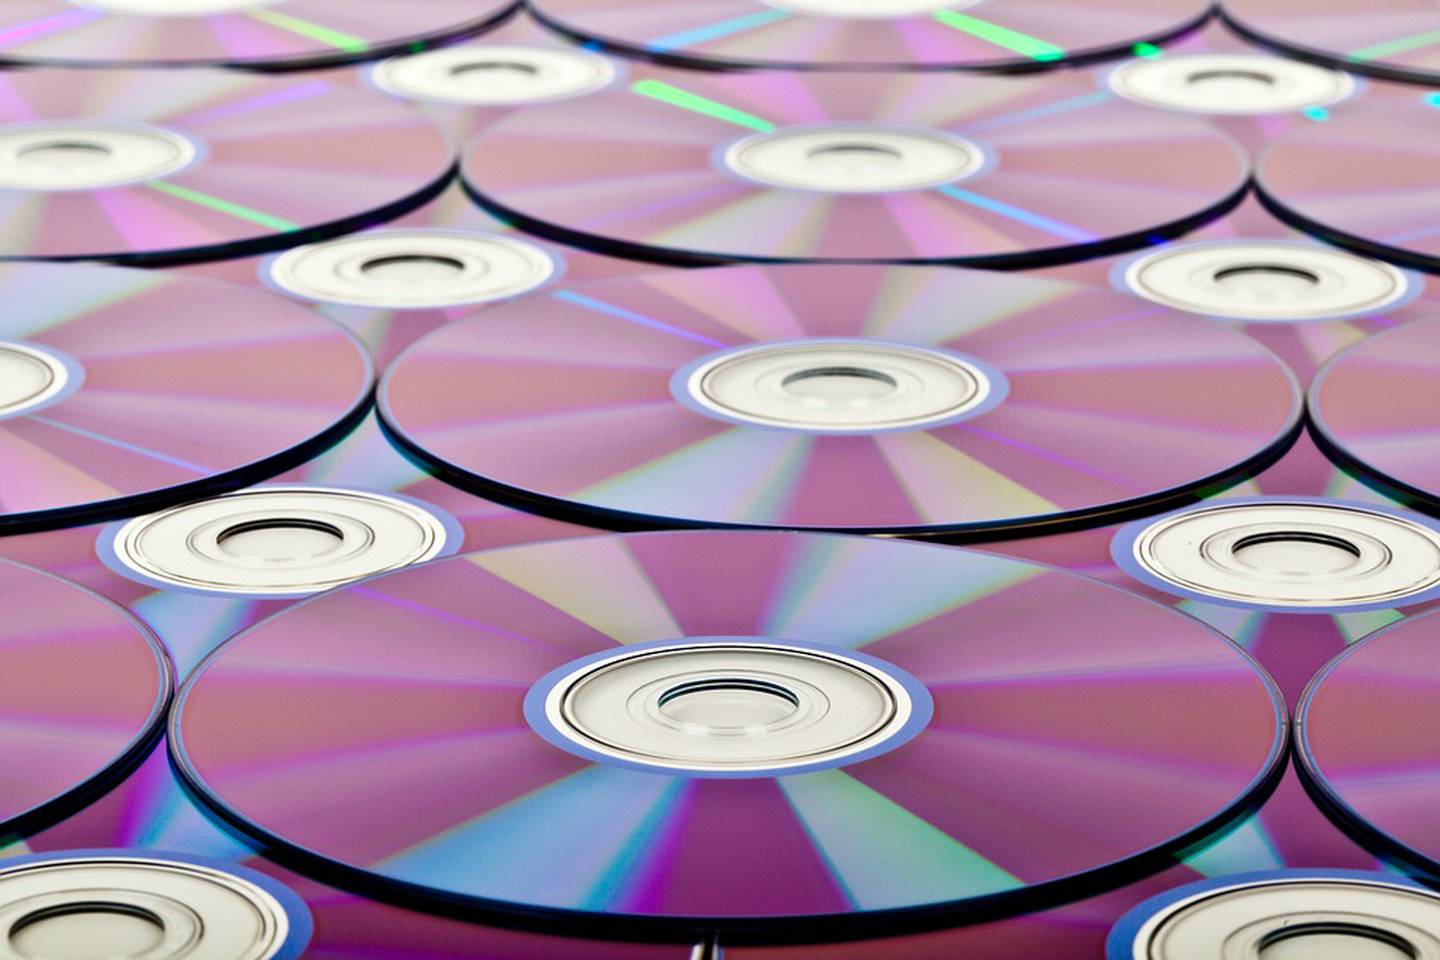 Tendrá la capacidad para almacenar hasta un millón de películas de calidad promedio en un solo disco.